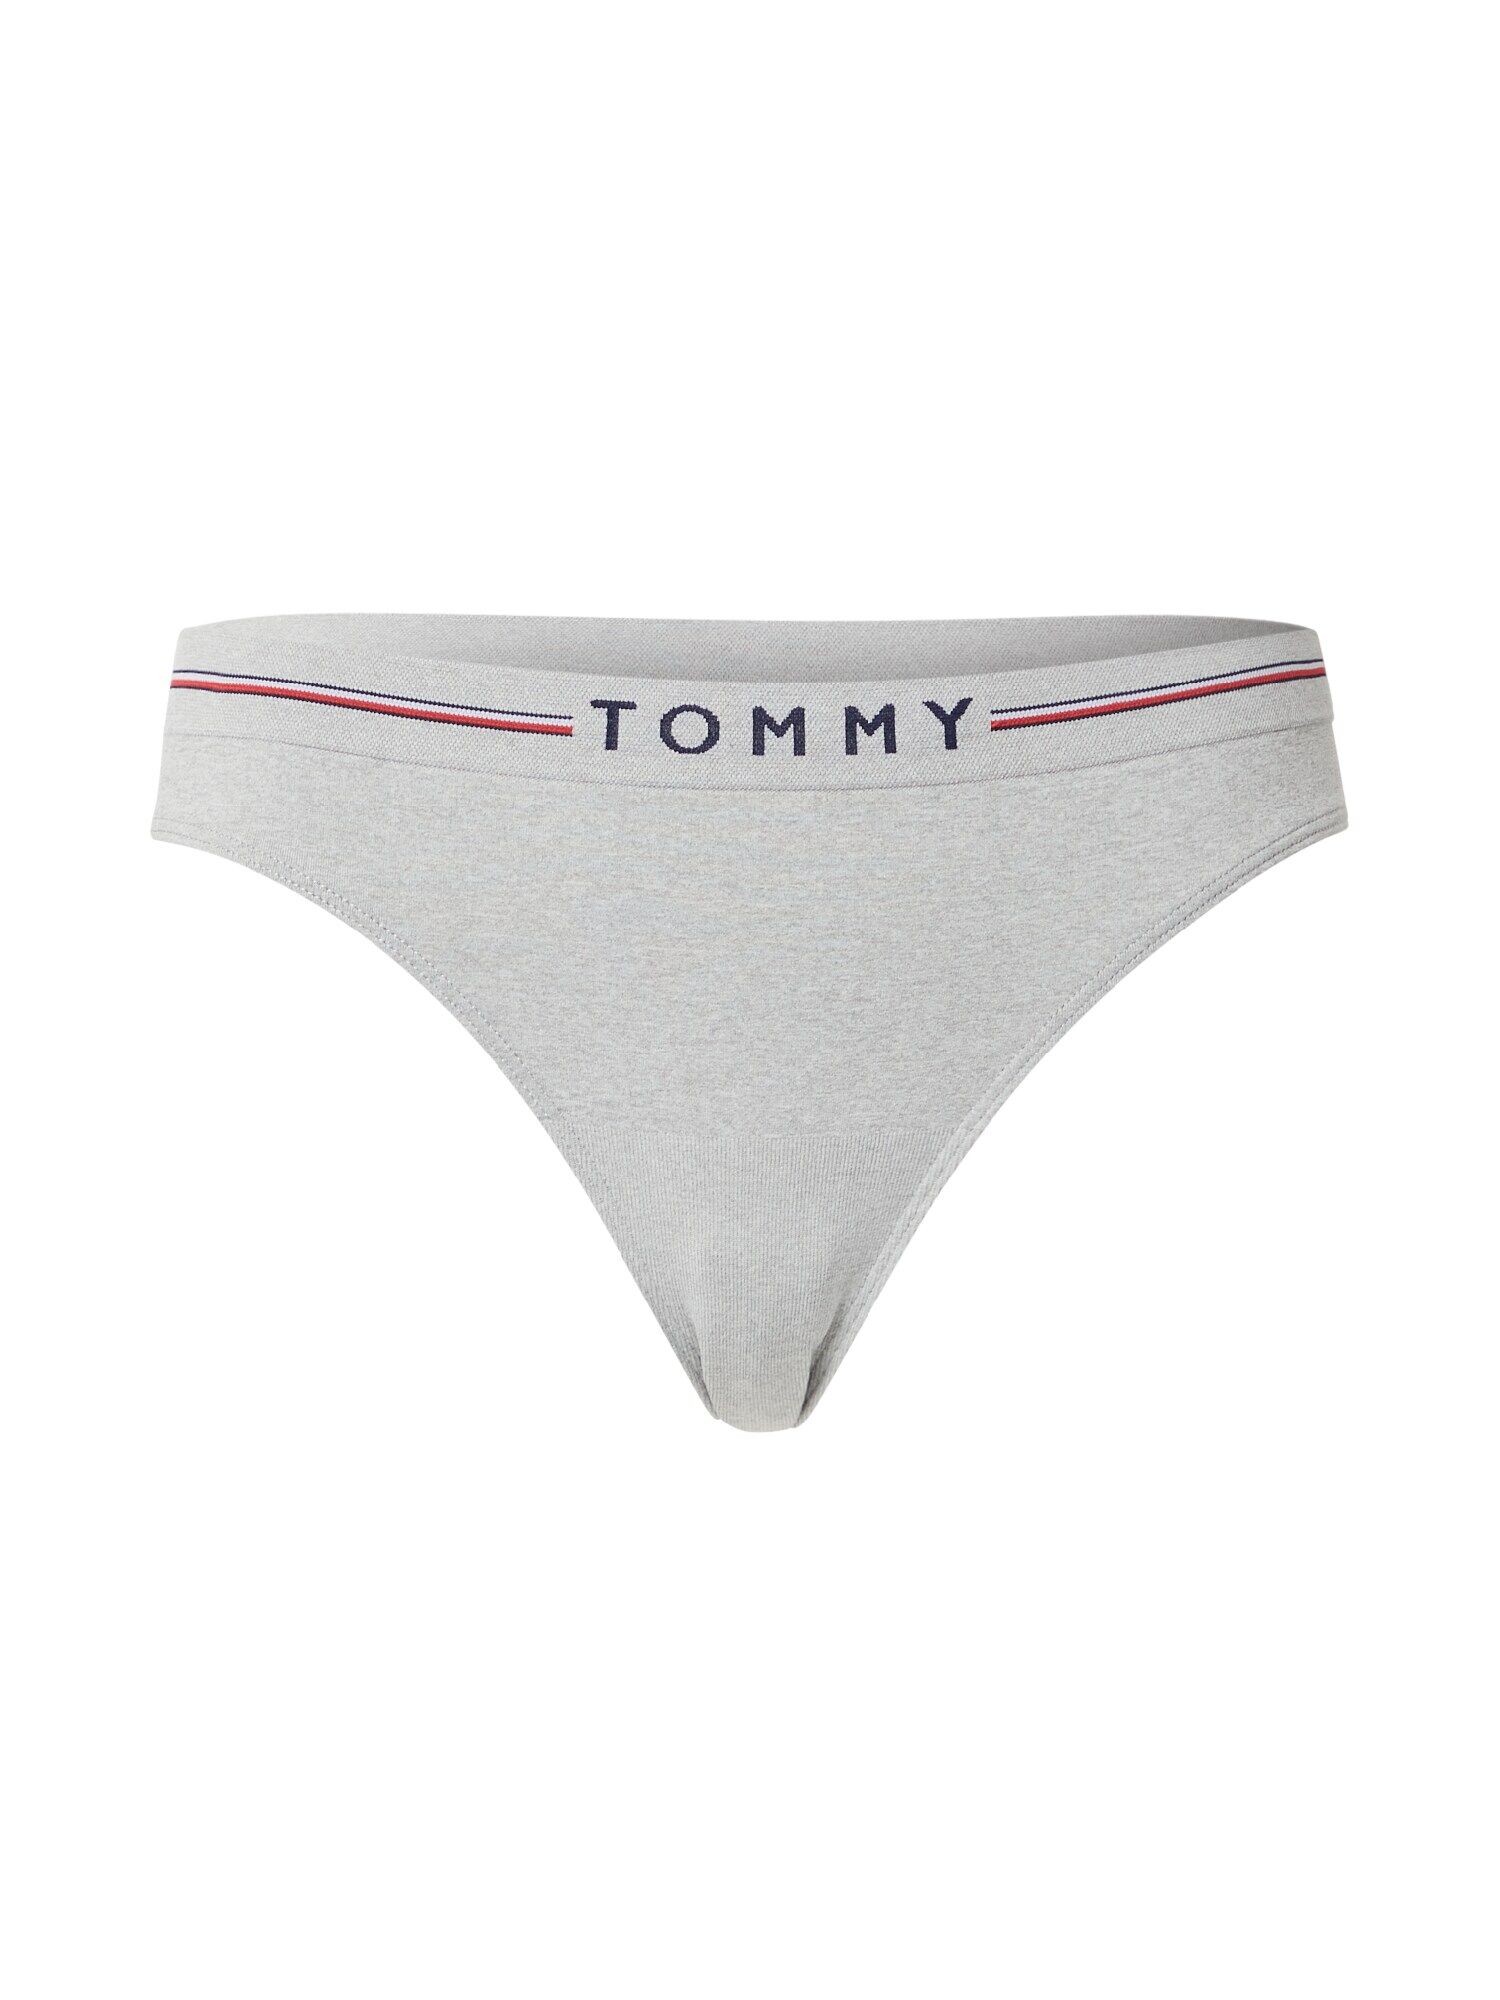 Tommy Hilfiger Underwear String Grigio